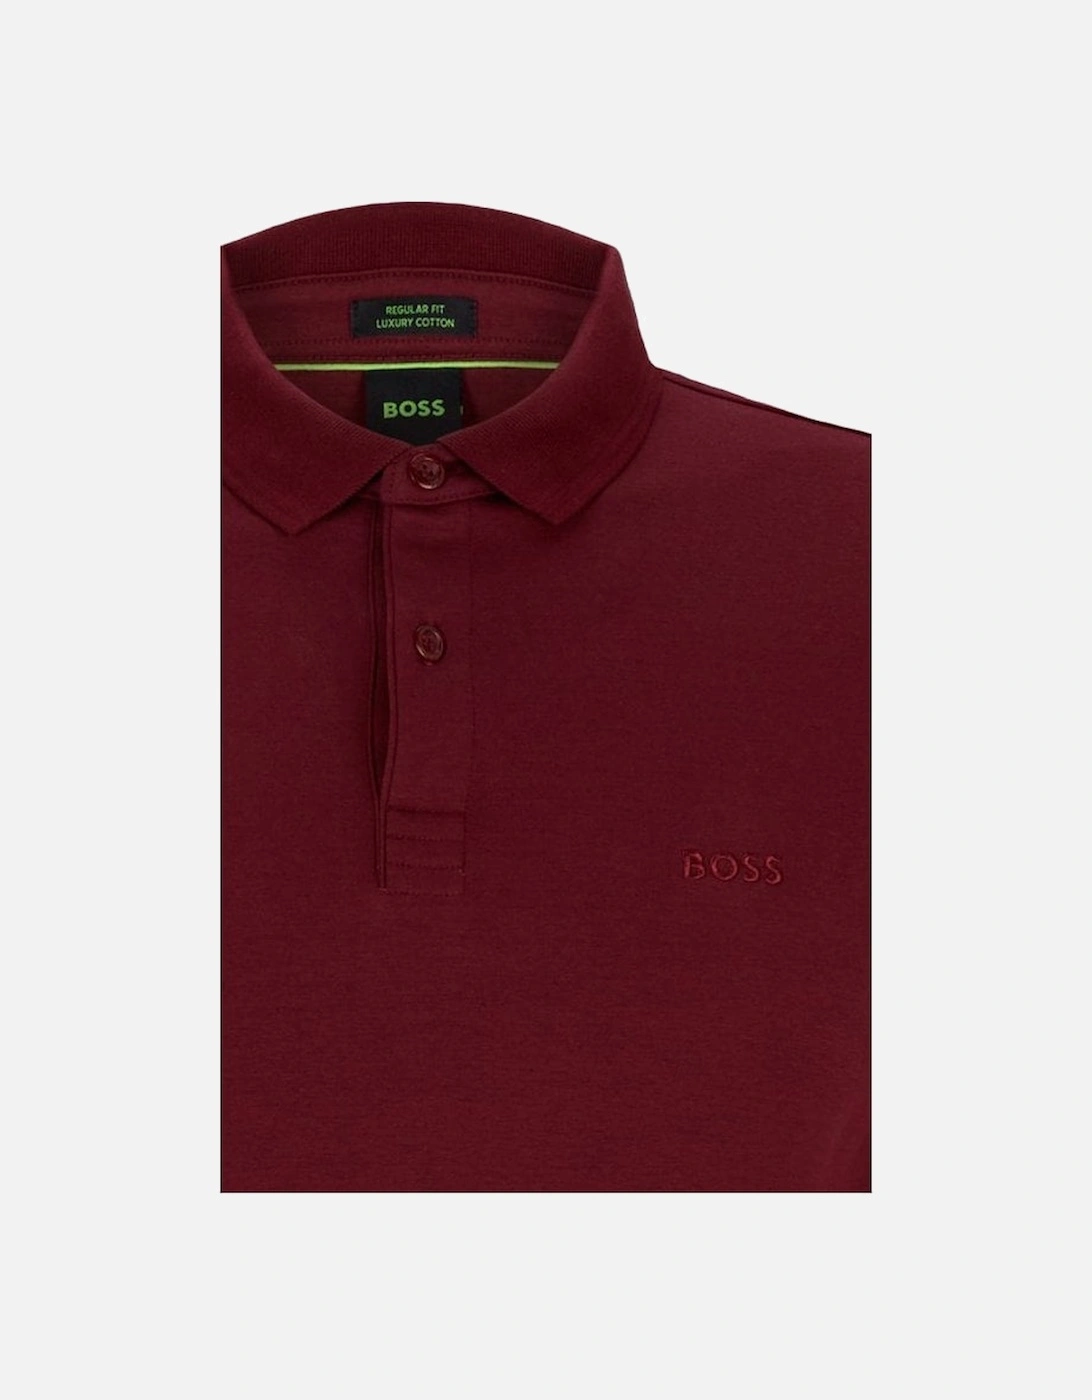 Men's Dark Red Pirol Long Sleeved Polo Shirt.